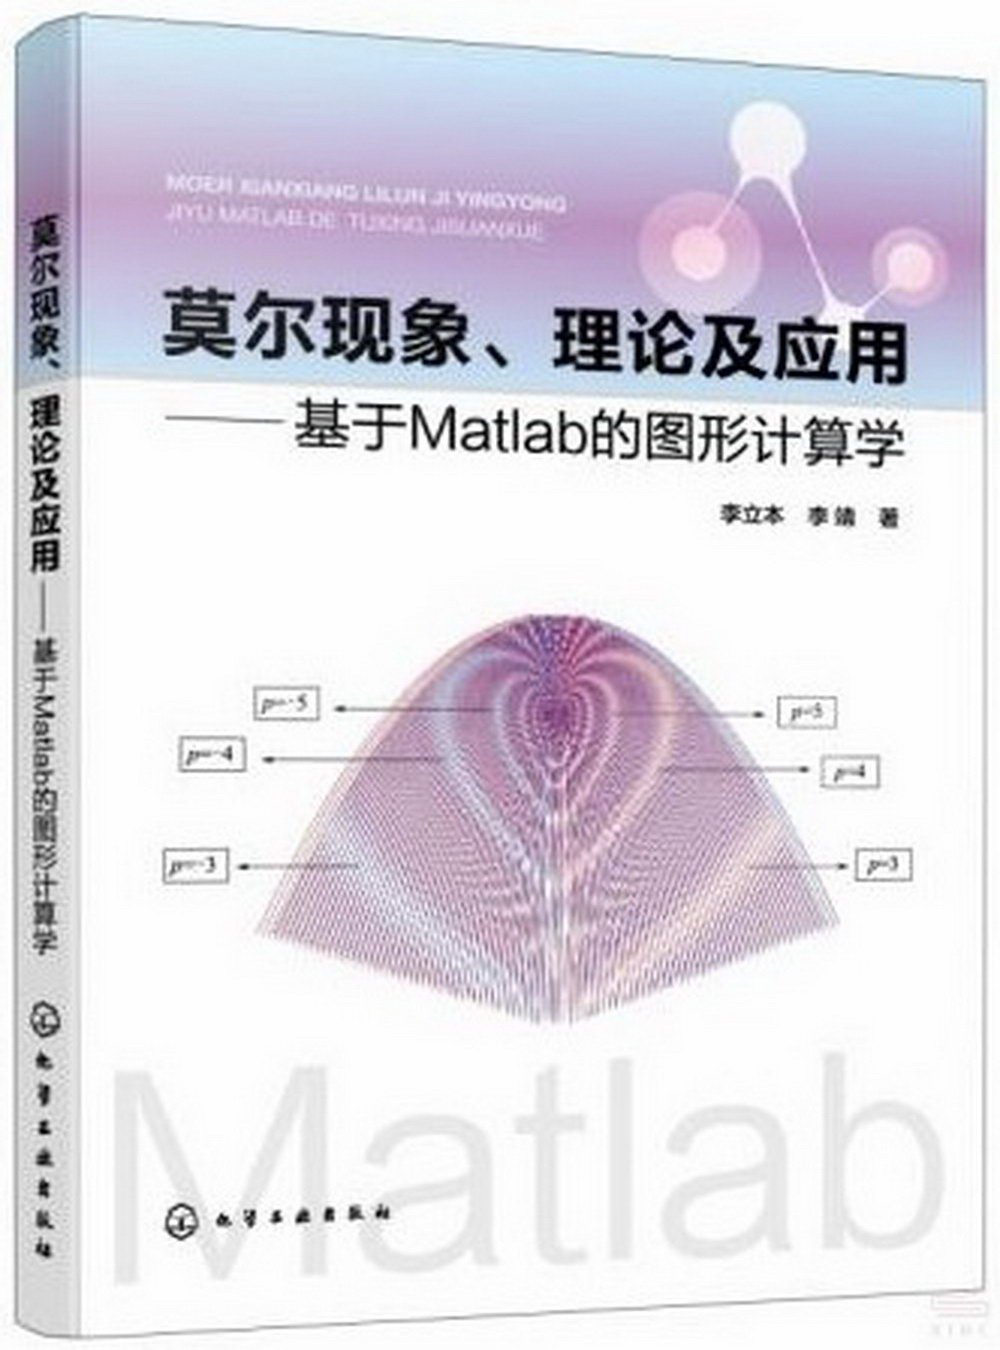 莫爾現象、理論及應用--基於Matlab的圖形計算學